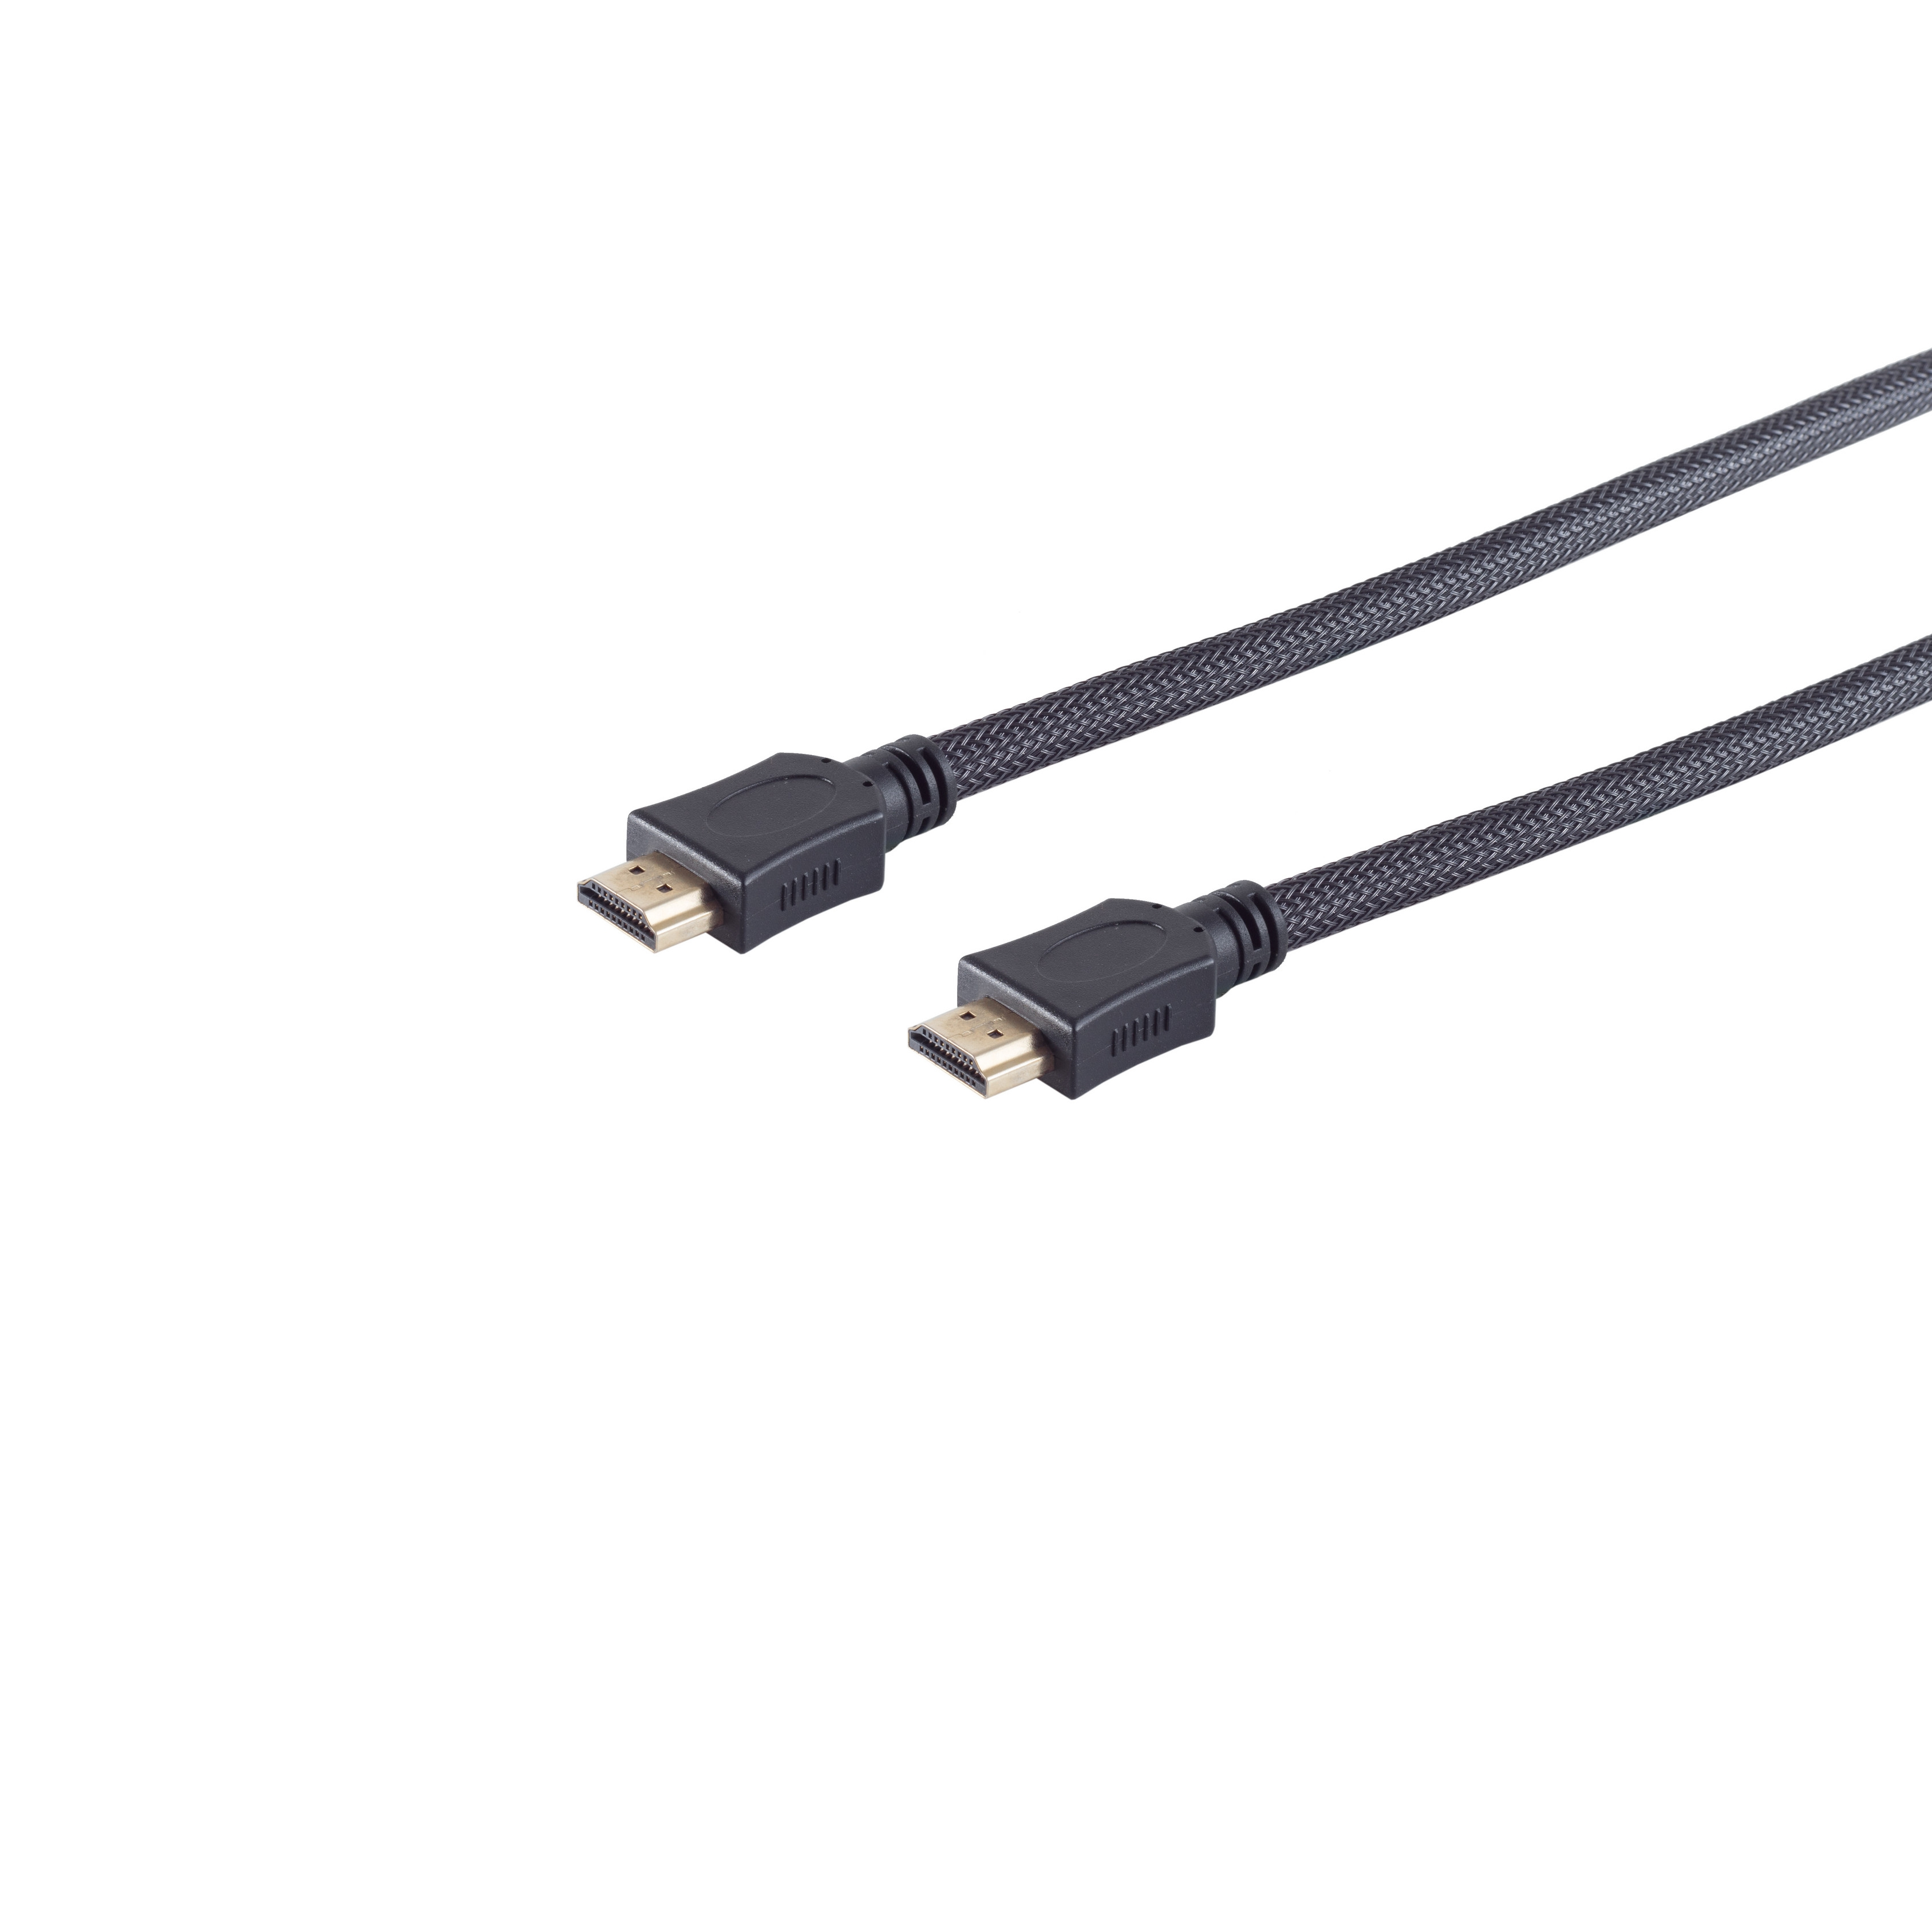 Mantel verg HDMI Nylon A-St HDMI HEAC CONNECTIVITY sw S/CONN A-St/HDMI 1,5m MAXIMUM Kabel